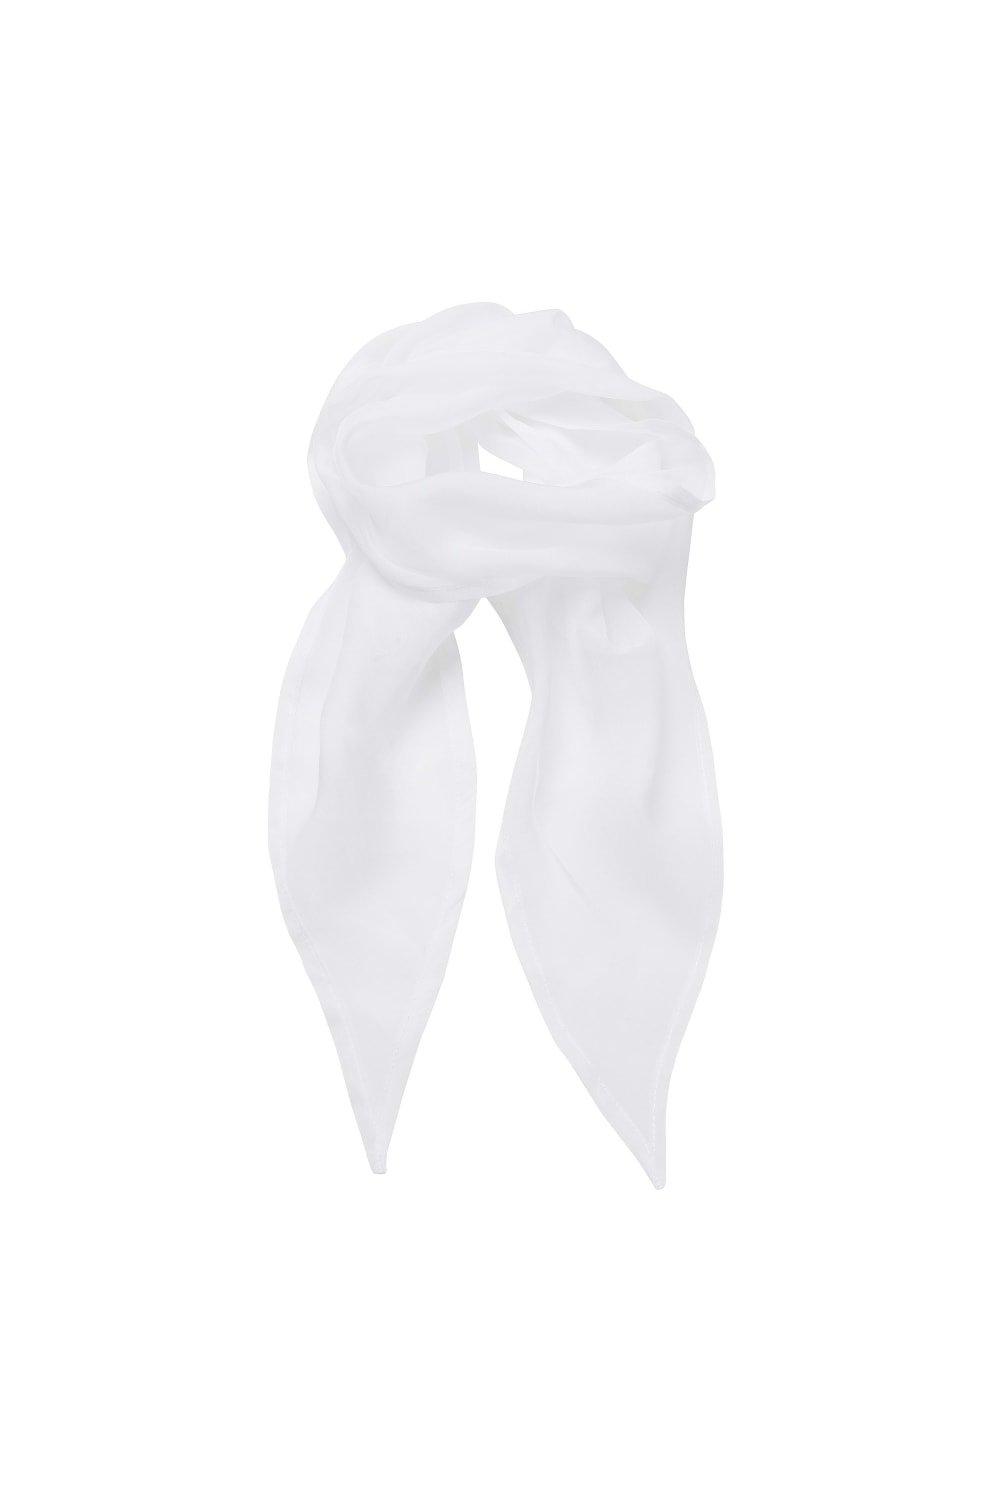 Деловой шифоновый деловой шарф Premier, белый